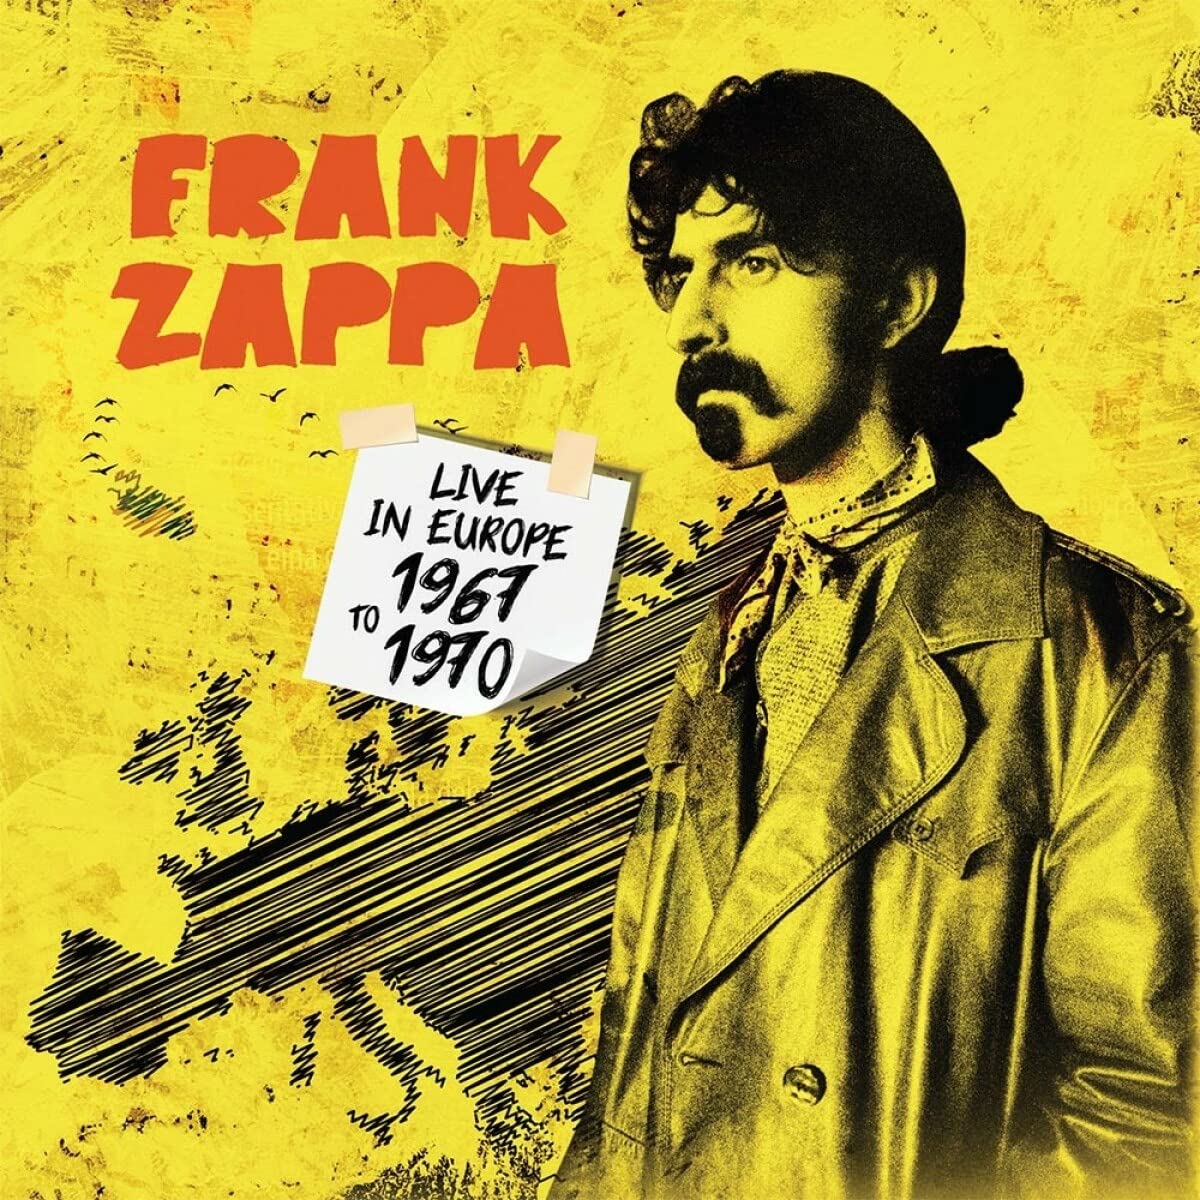 Audio Cd Frank Zappa - Live In Europe 1967 To 1970 (5 Cd) NUOVO SIGILLATO, EDIZIONE DEL 21/01/2022 SUBITO DISPONIBILE